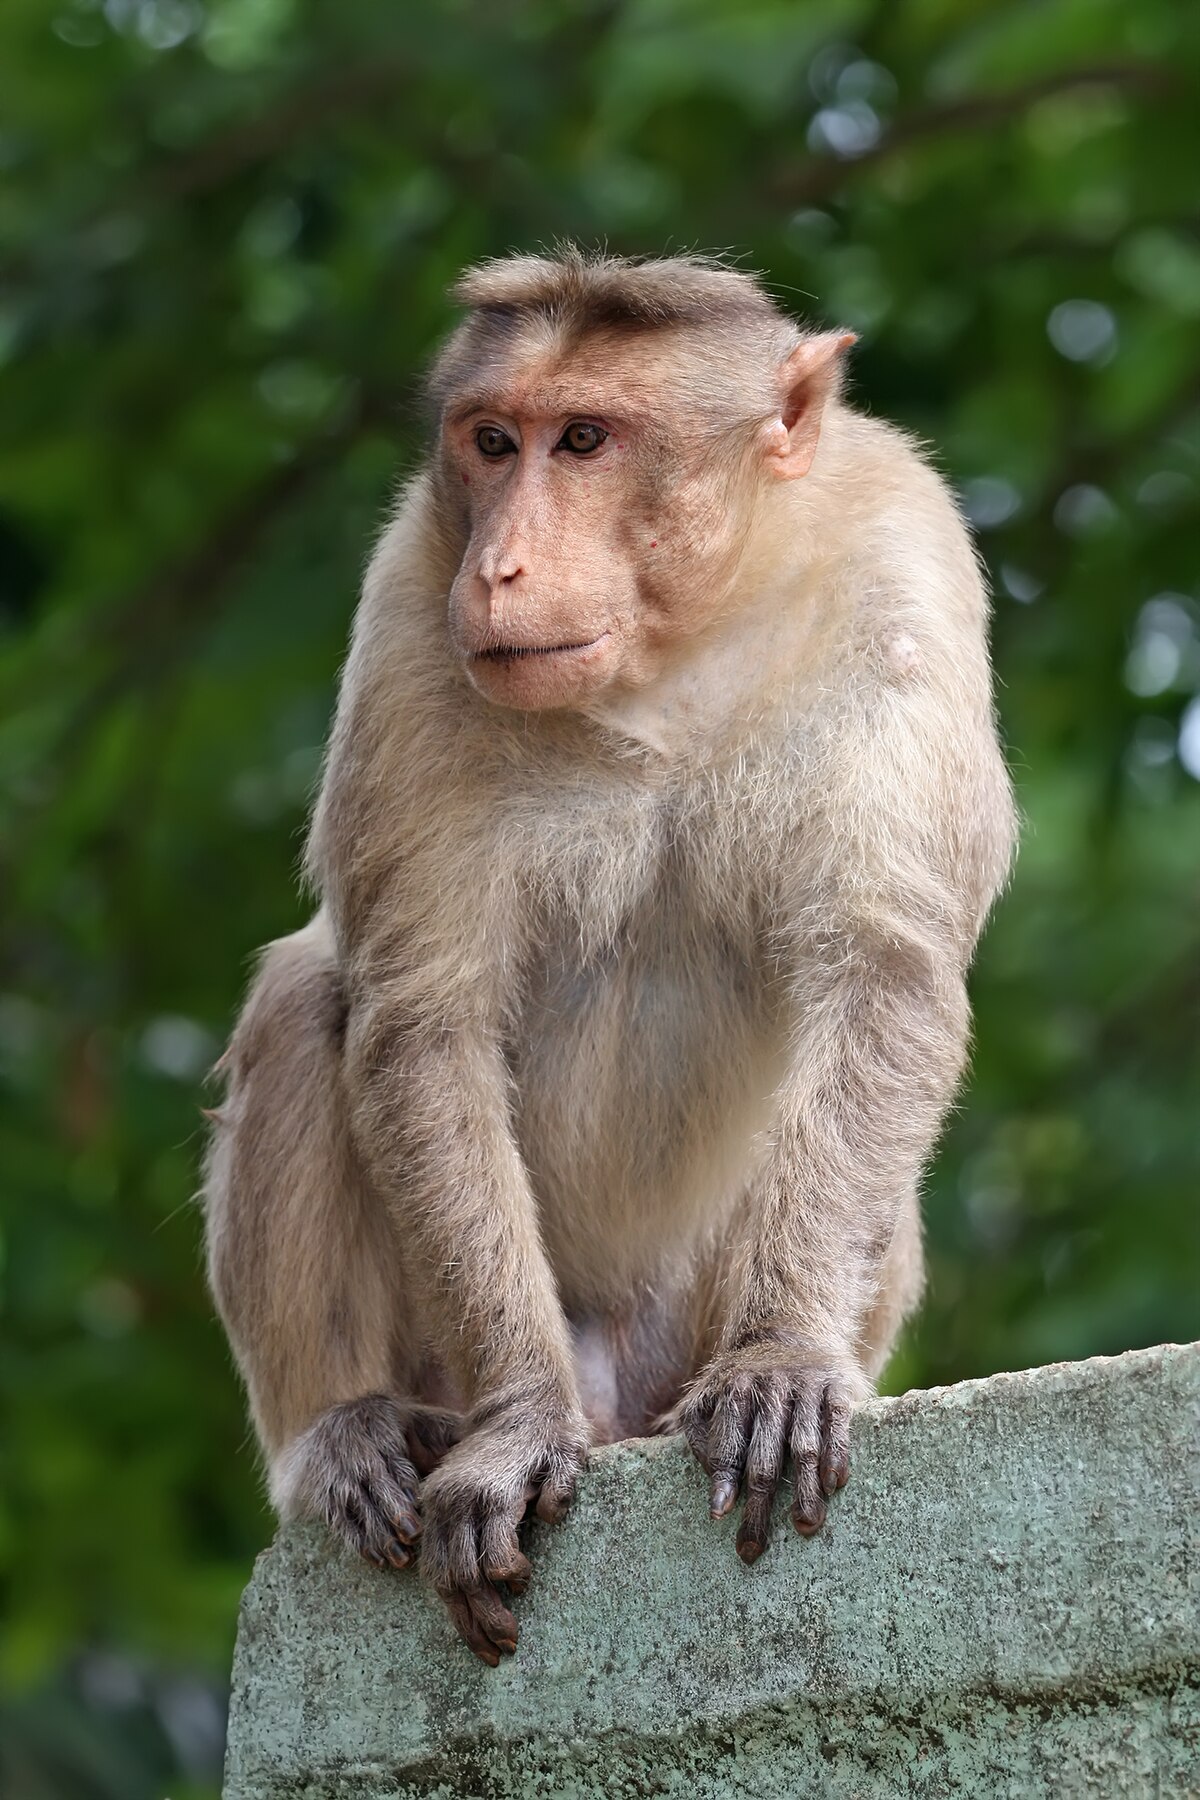 Con khỉ đã xuất hiện trong văn hóa của nhiều nước trên thế giới. Chúng thường được gắn liền với các truyền thuyết và tín ngưỡng dân gian như sử thi Tàu Thủy Hư Không của Trung Quốc hay cultur của người Ấn Độ. Hãy cùng tìm hiểu về con khỉ trong văn hóa và tìm kiếm những hình ảnh độc đáo về chúng!